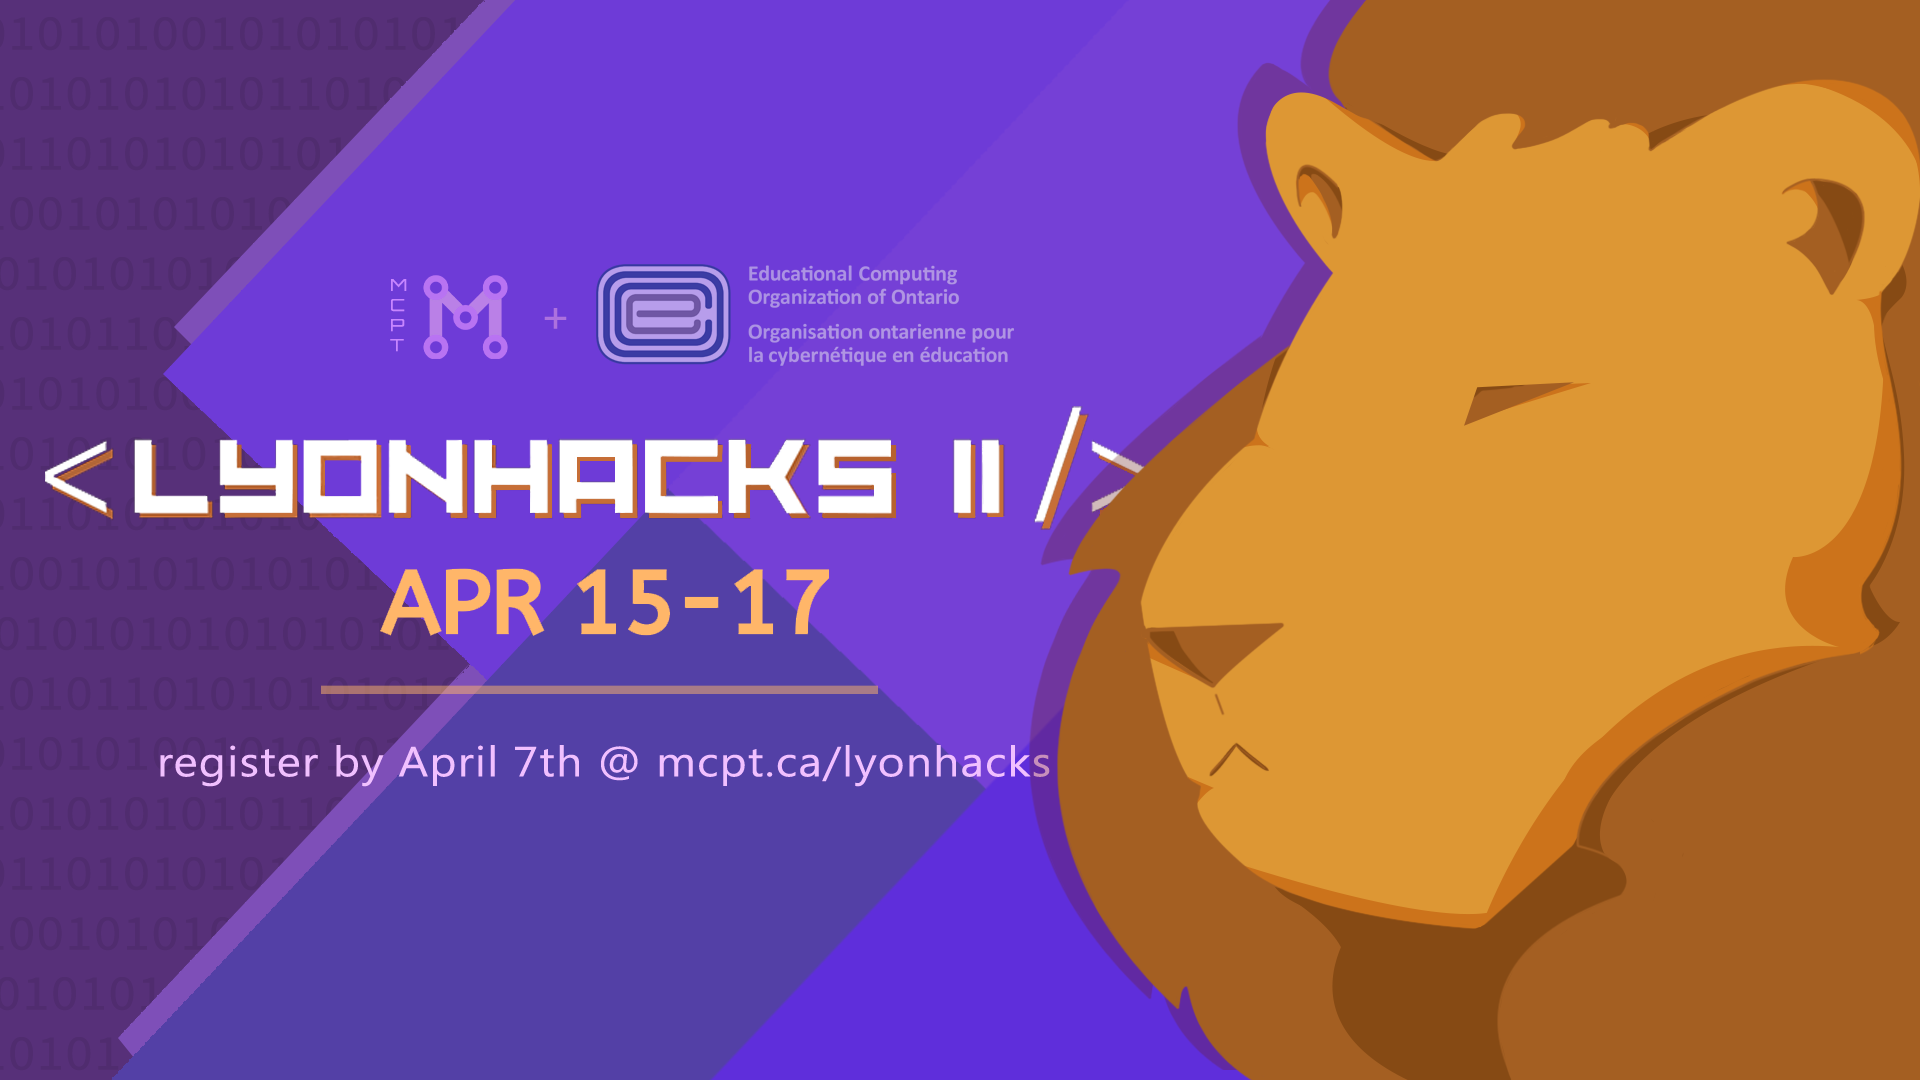 LyonHacks Poster; register at mcpt.ca/lyonhacks before April 7